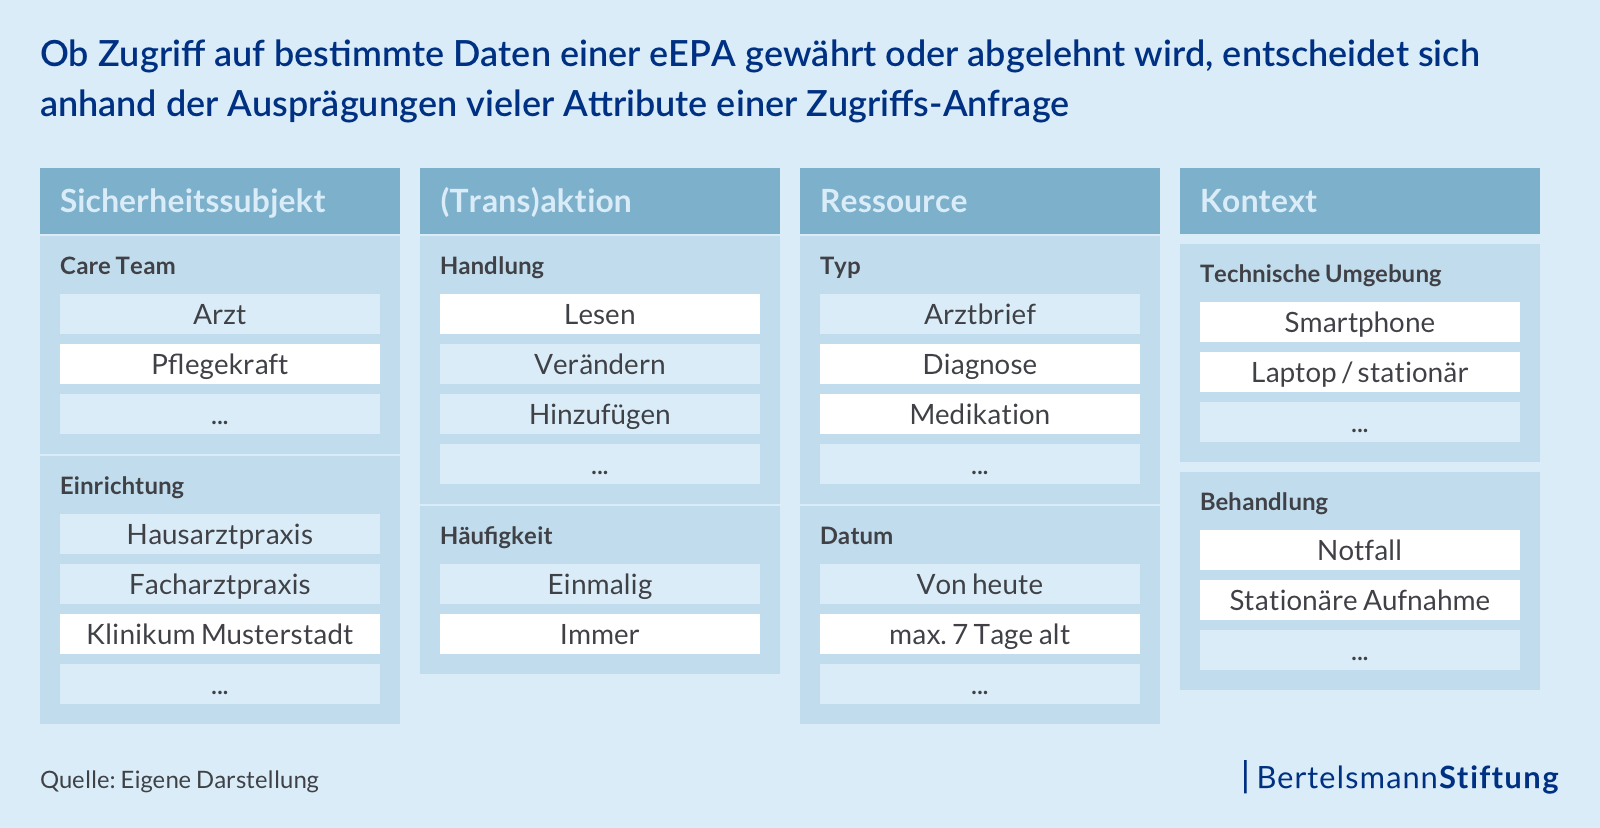 Ob Zugriff auf bestimmte Daten einer eEPA gewährt oder abgelehnt wird, entscheidet sich anhand der Ausprägungen vieler Attribute einer Zugriffs-Anfrage